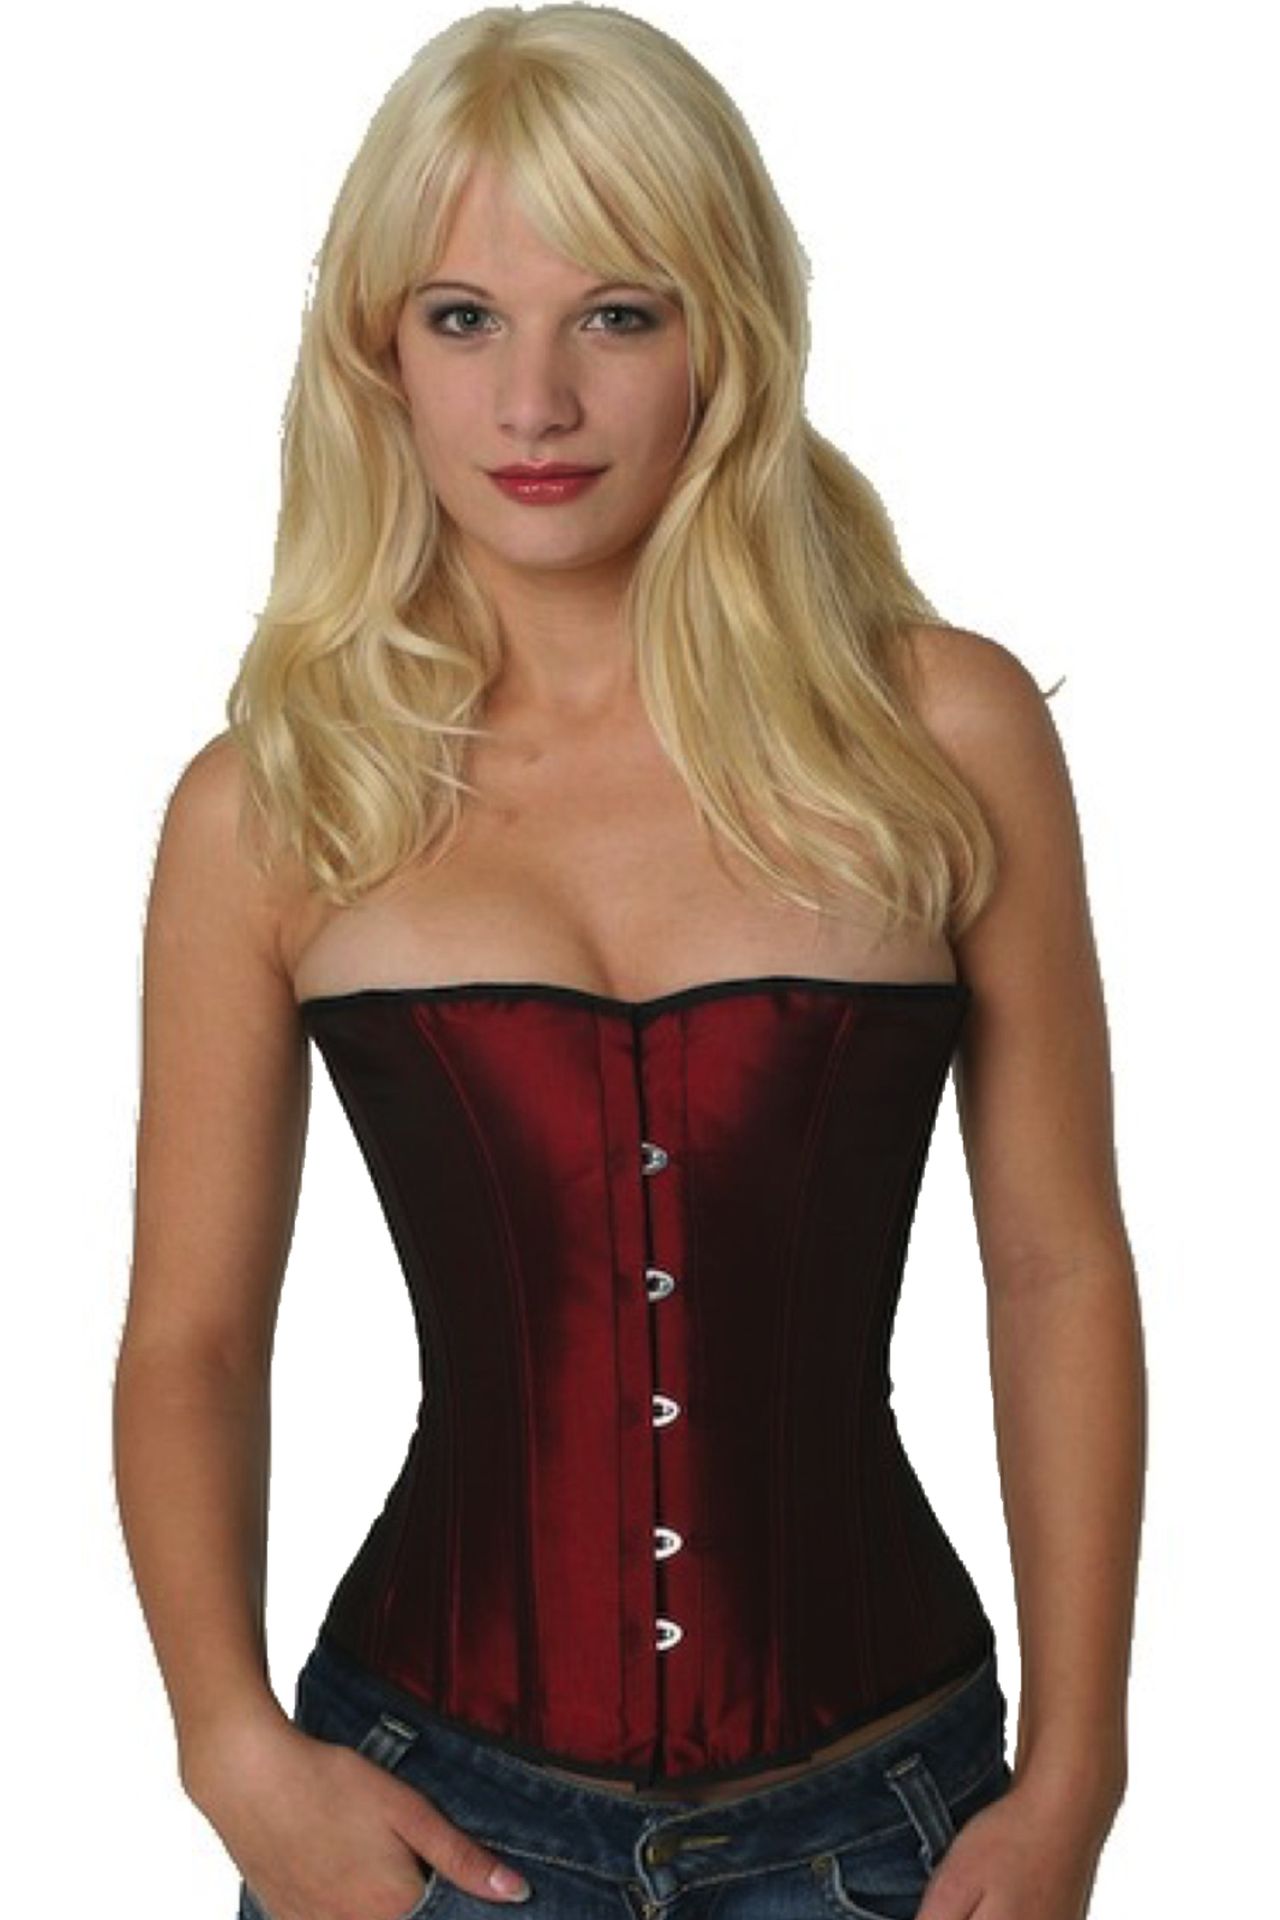 Corse rojo borgoña raso medio pecho corset sh05